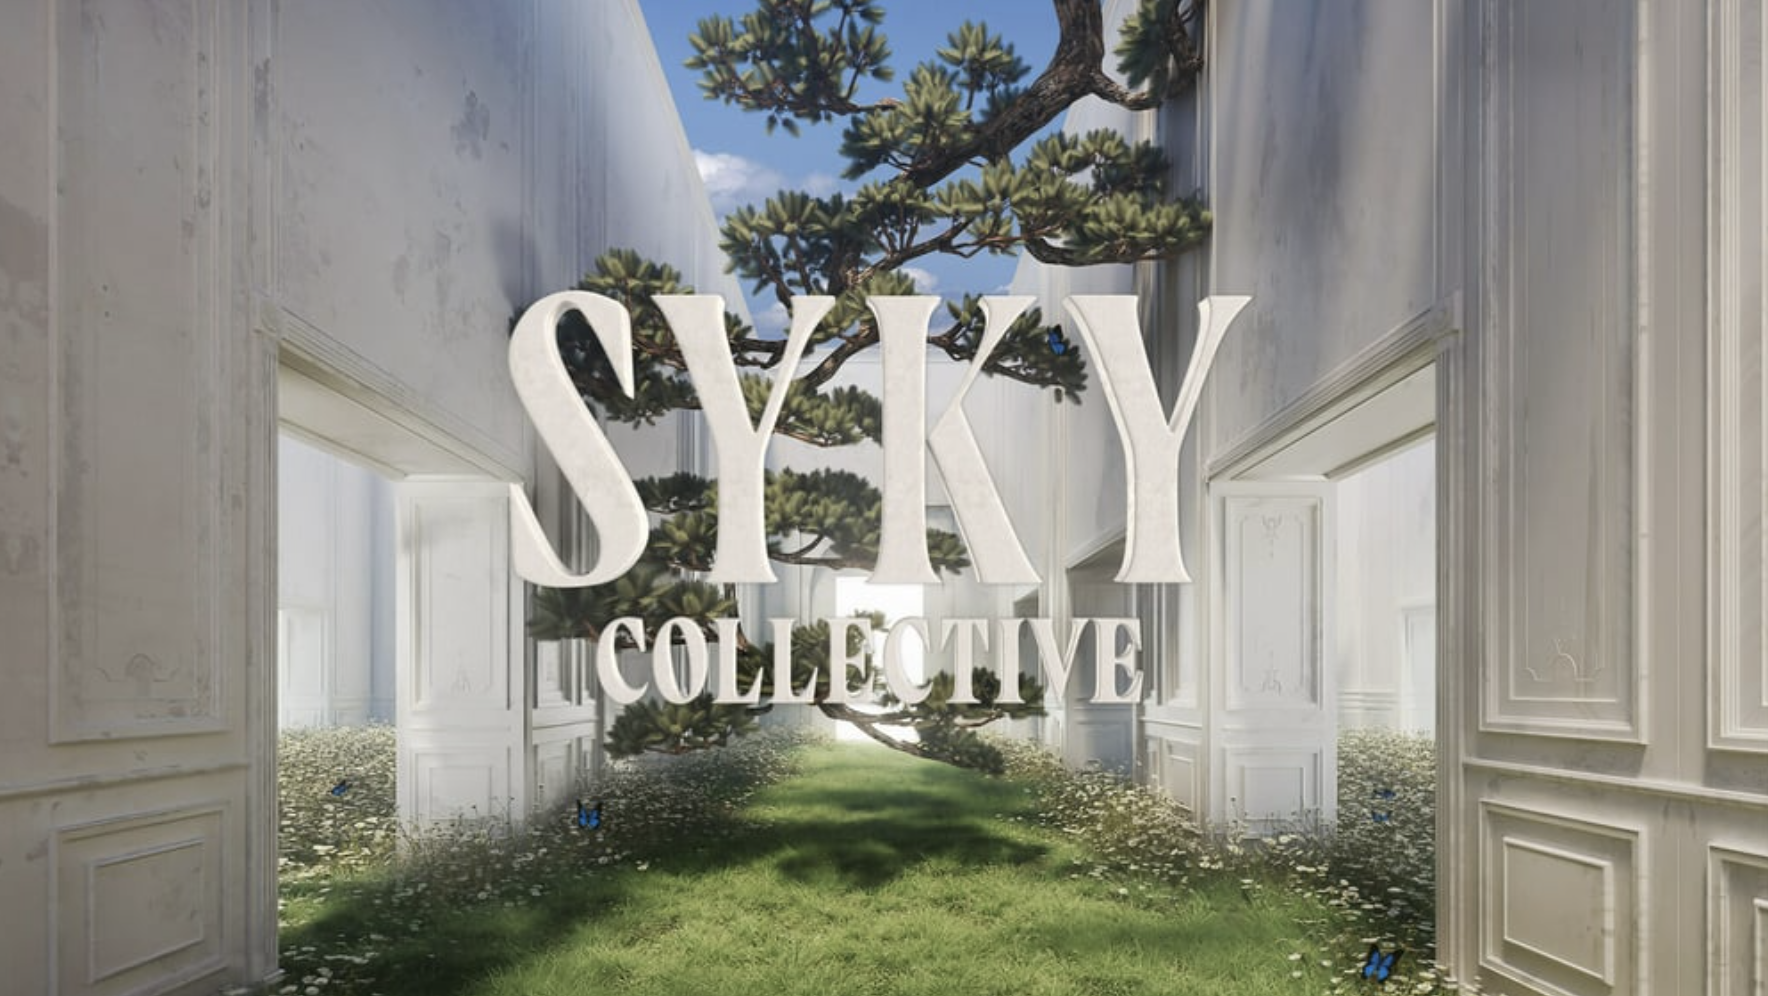 数字时尚创业公司 SYKY 启动虚拟时装设计师孵化项目